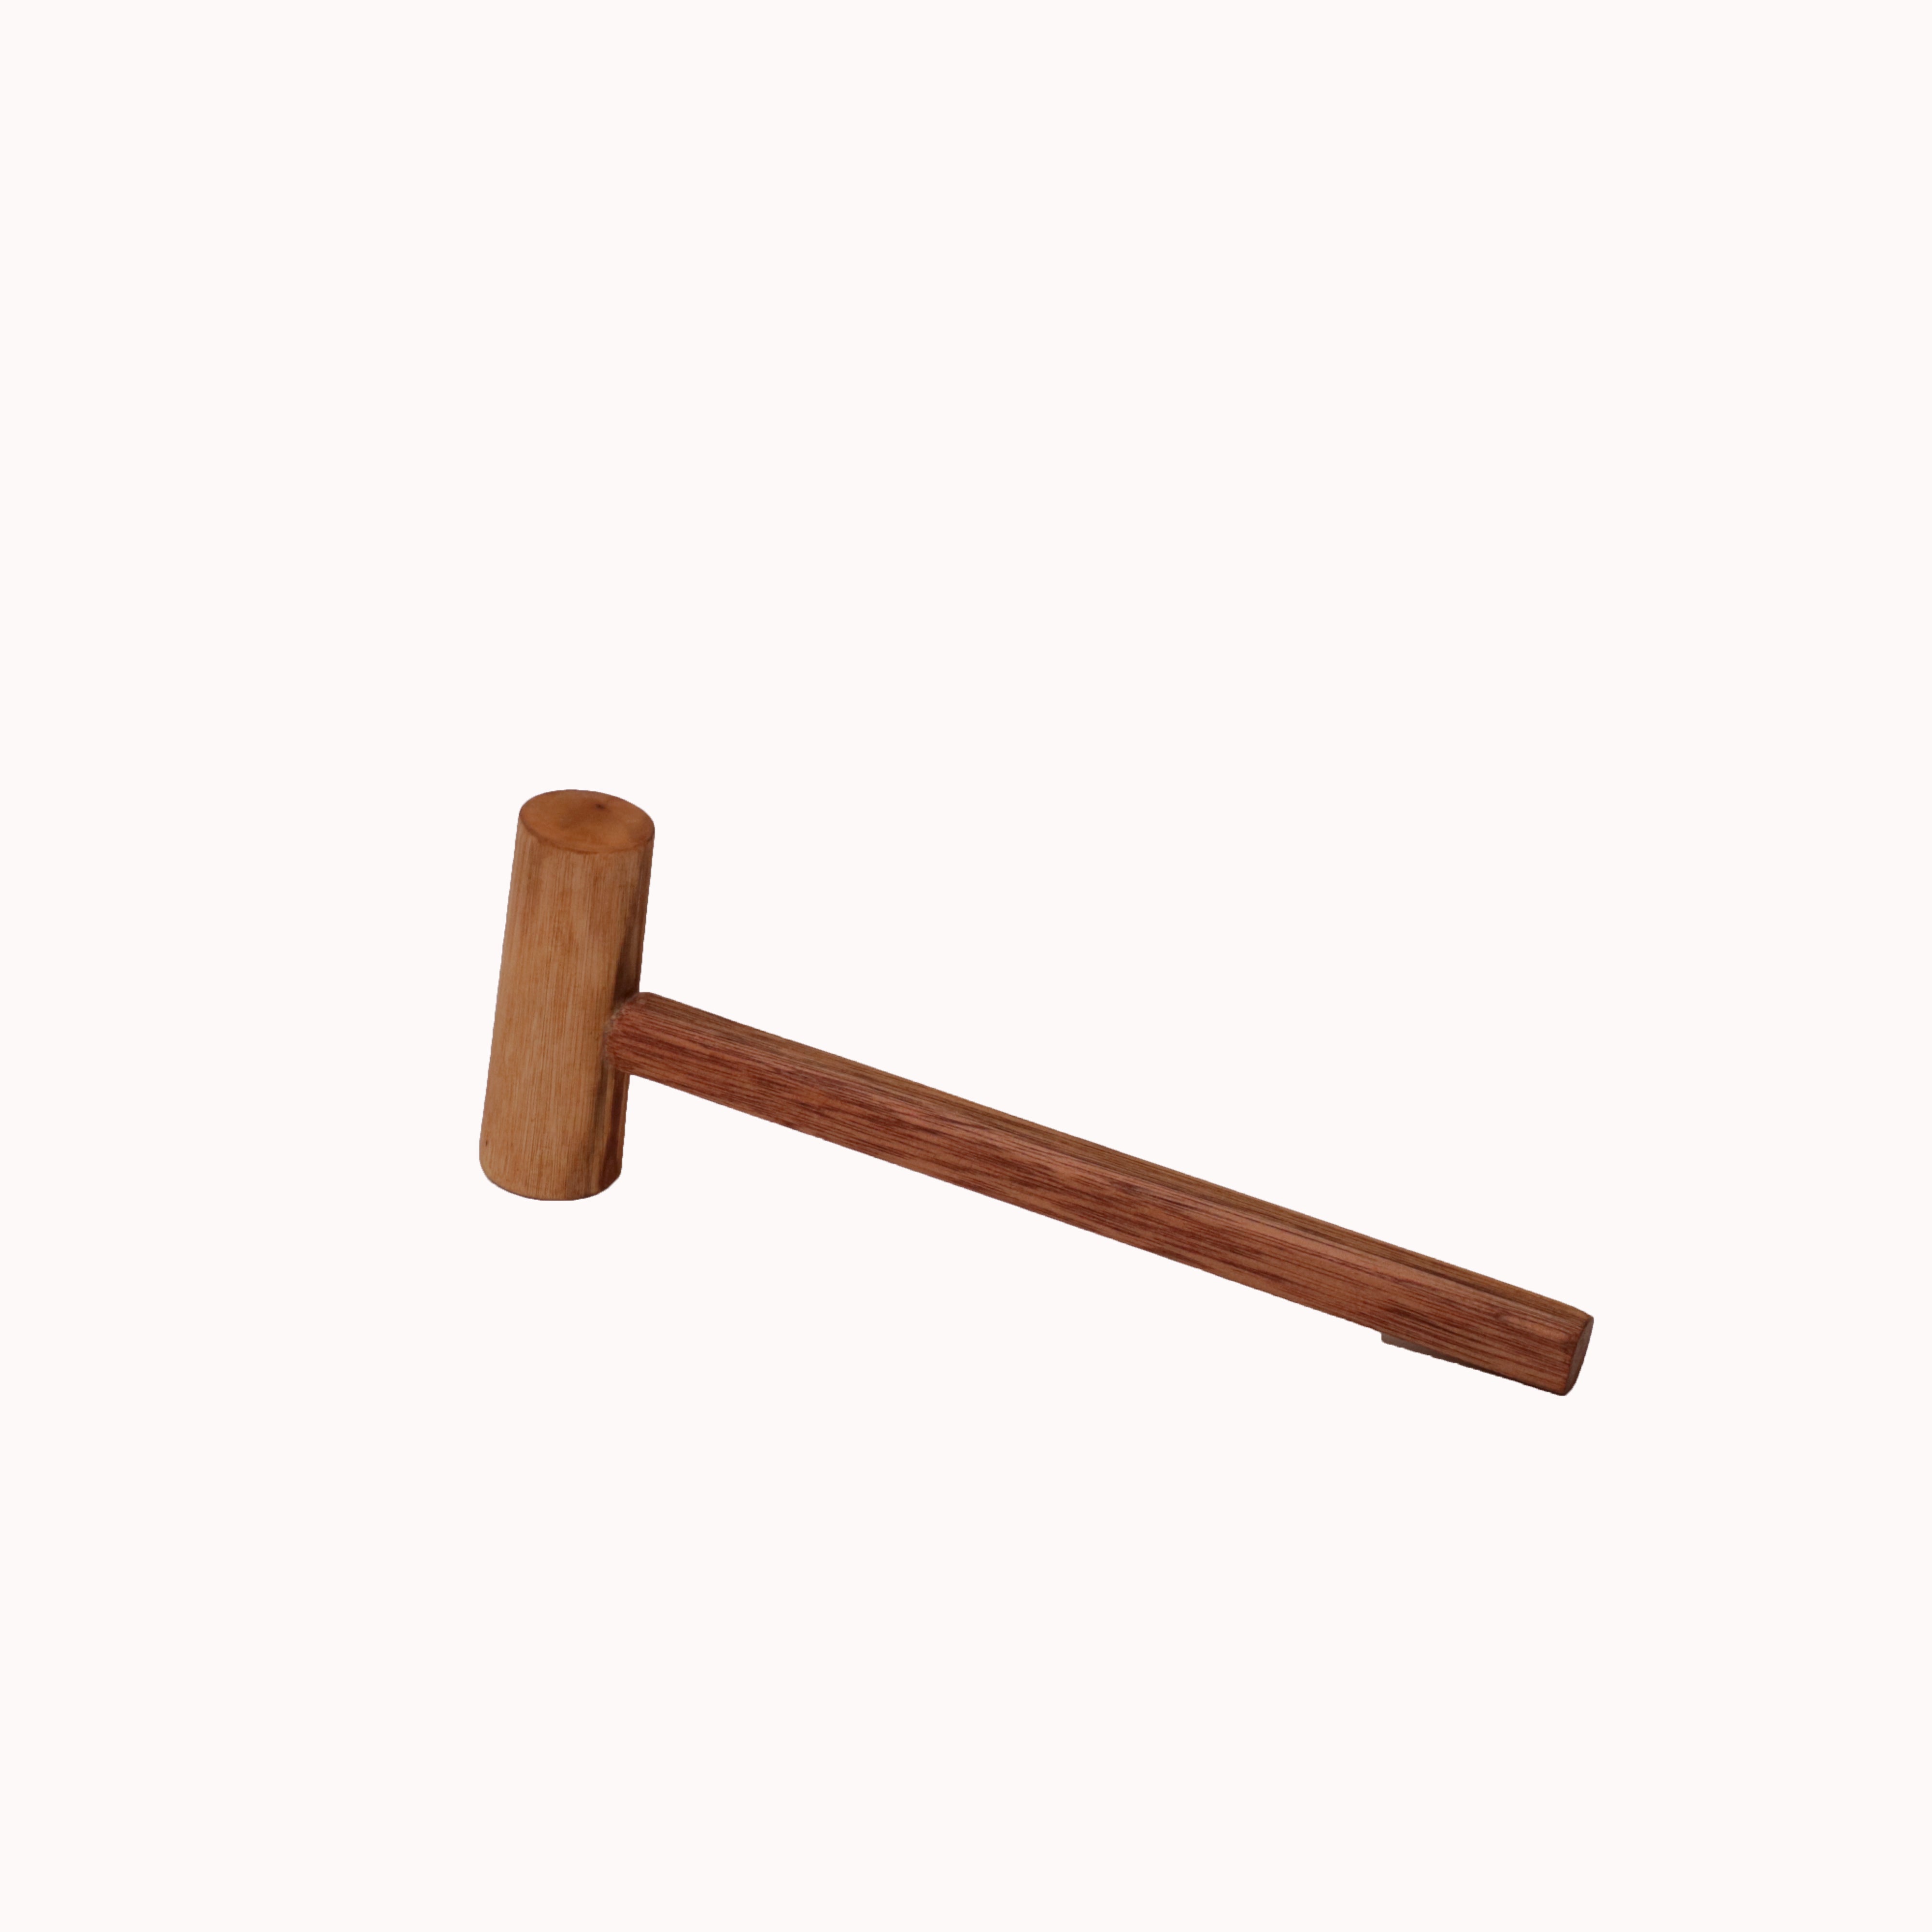 Sturdy Wooden Mallet Hammer